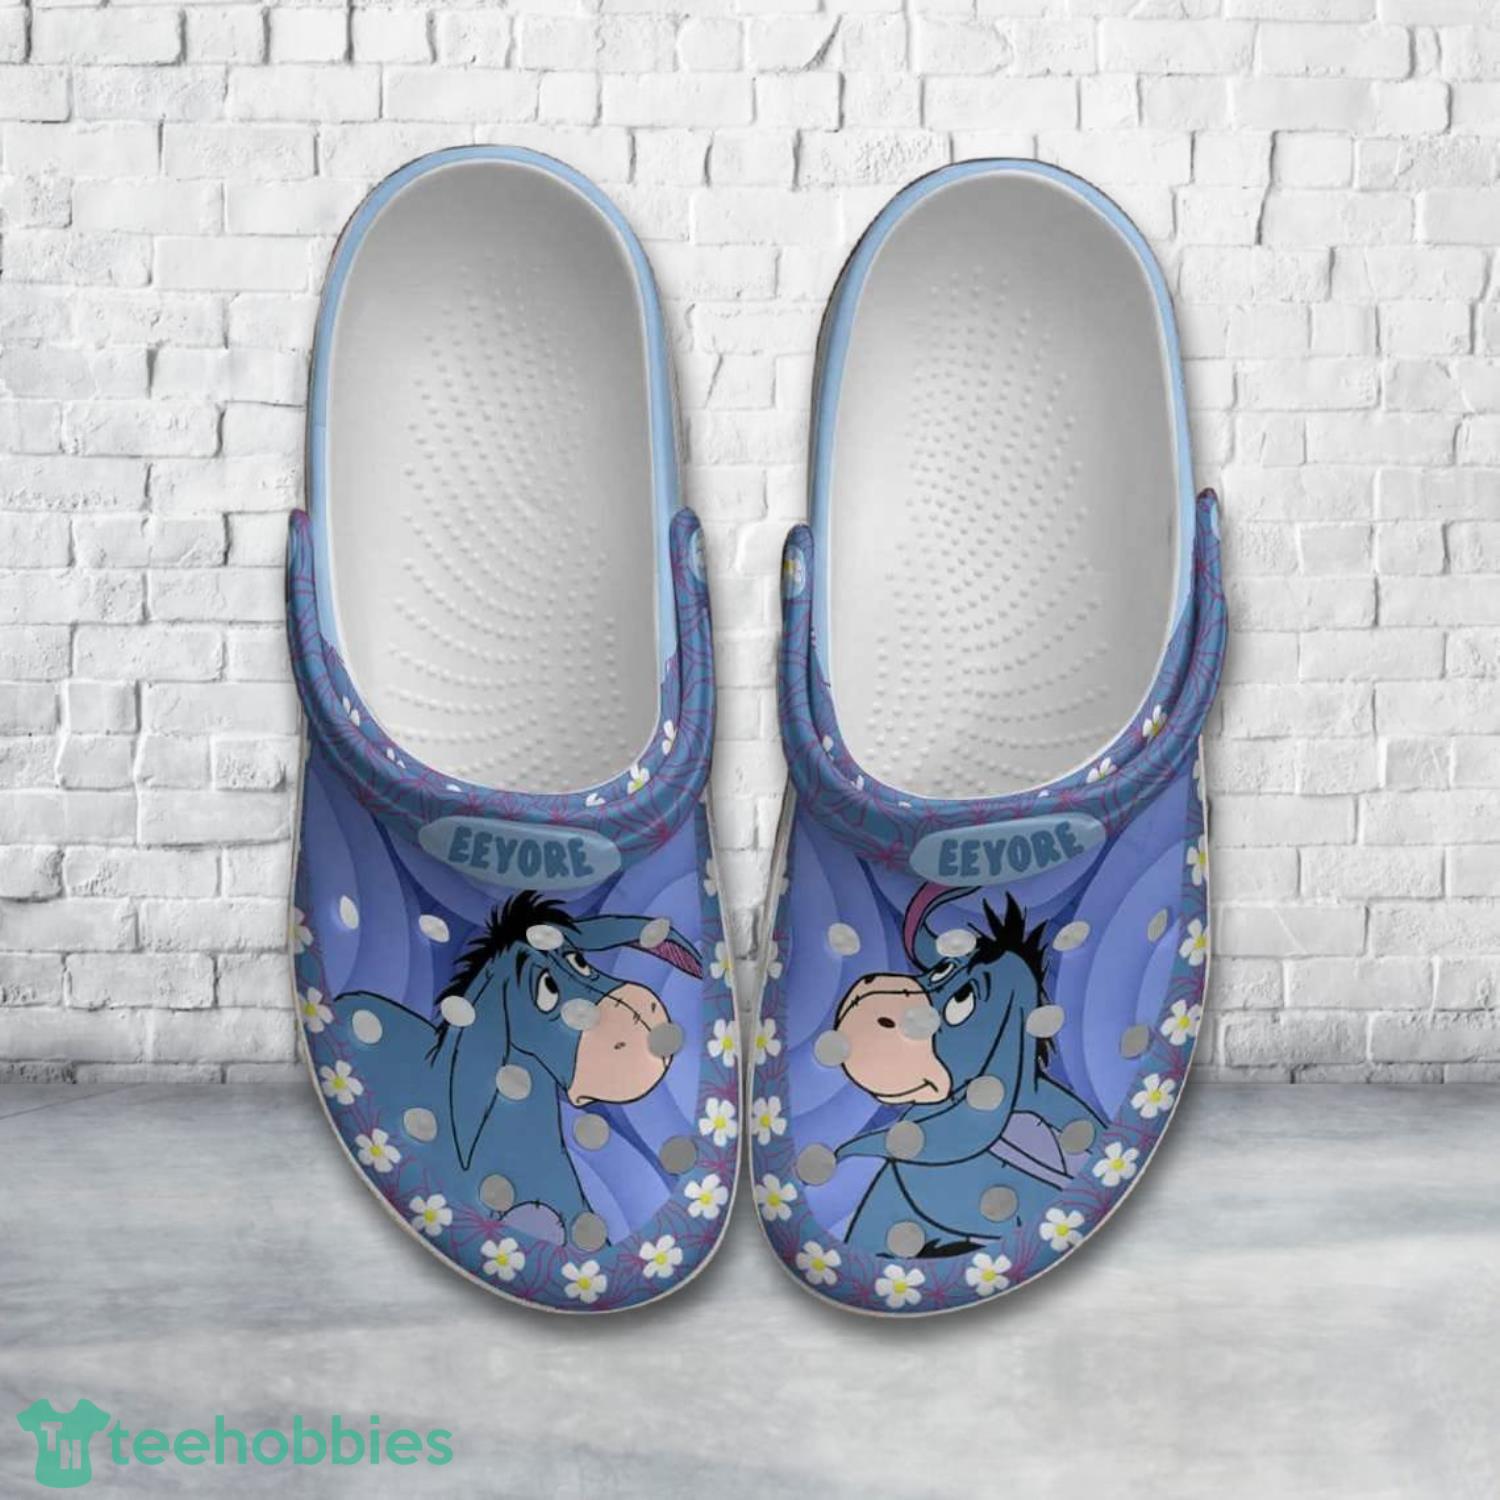 Eeyore Donkey Blue Flowers Patterns Disney Clog Shoes Product Photo 1